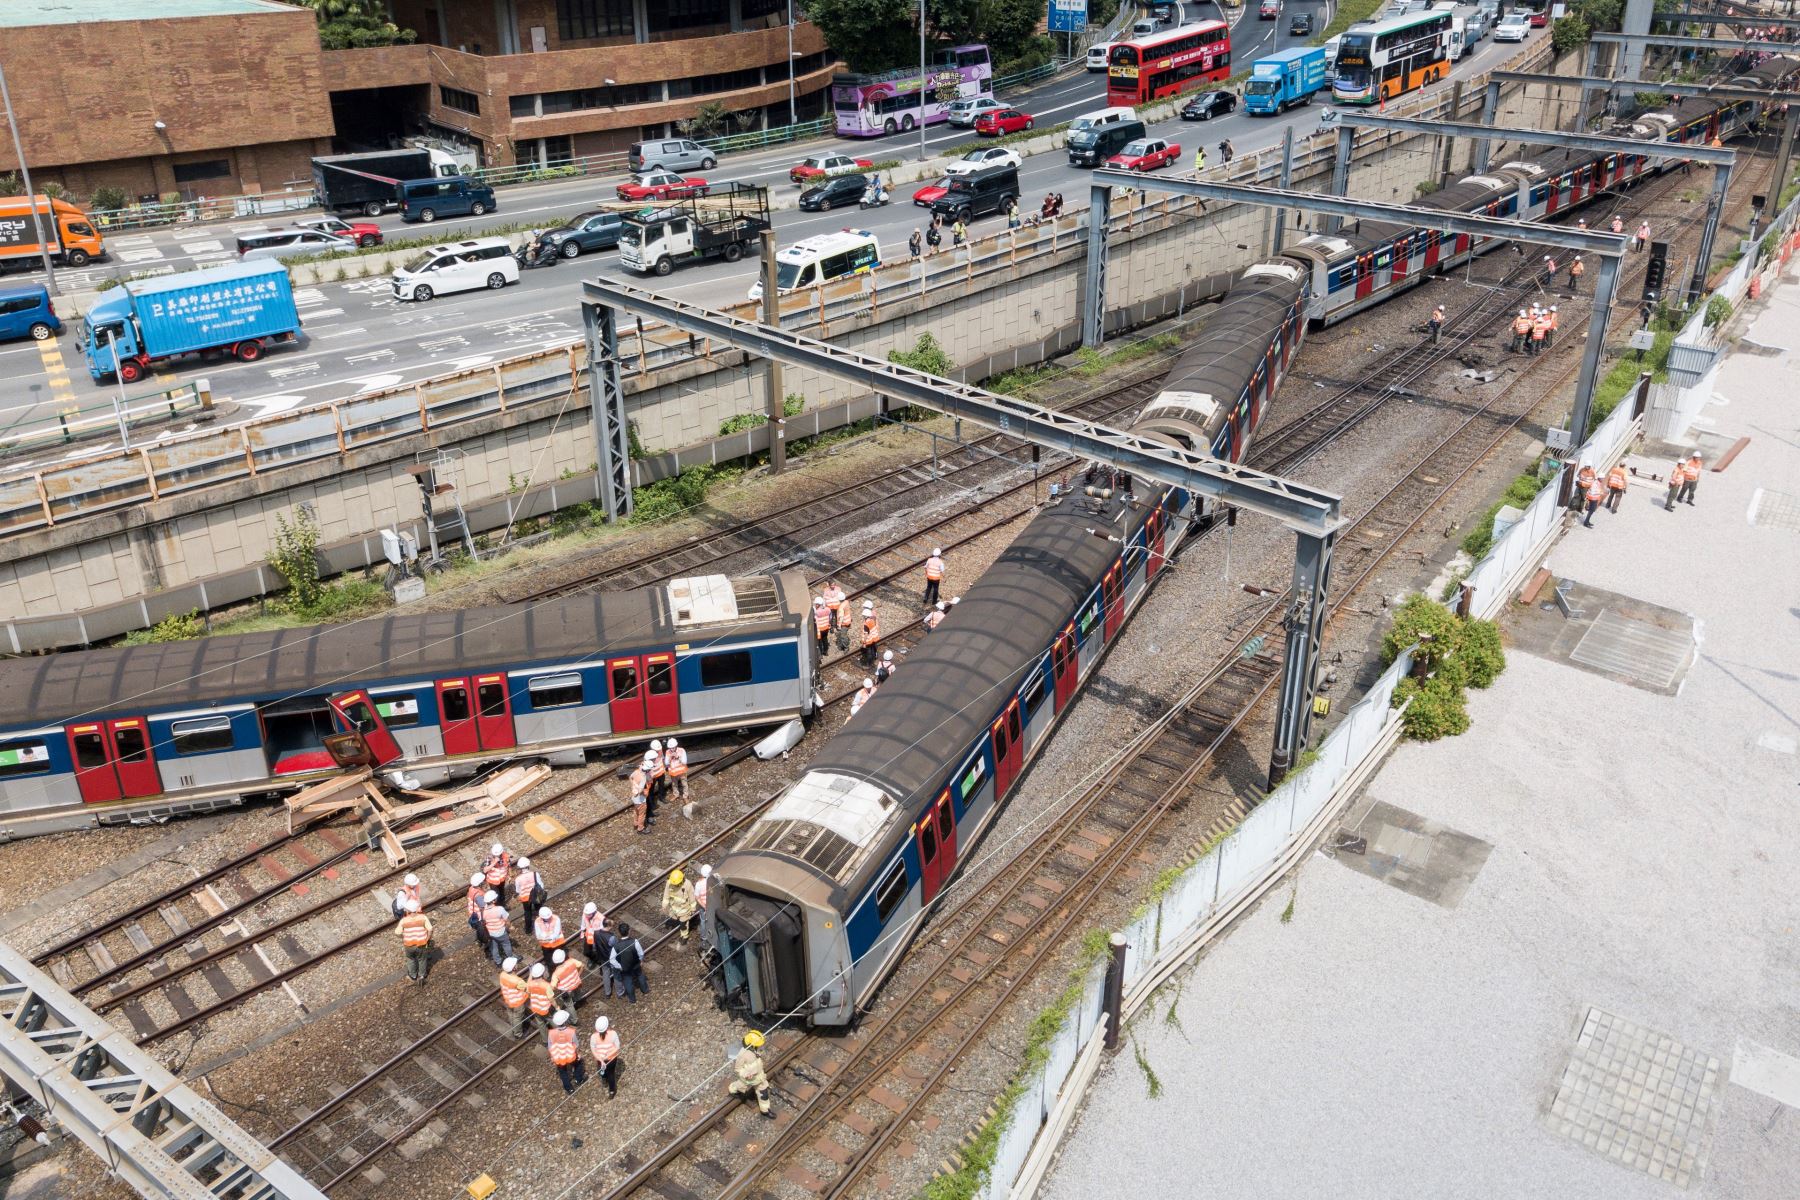 Los servicios ferroviarios entre dos estaciones de la línea tuvieron que suspenderse debido al accidente según MTR Corporation, la única compañía ferroviaria de la ciudad. Foto: AFP